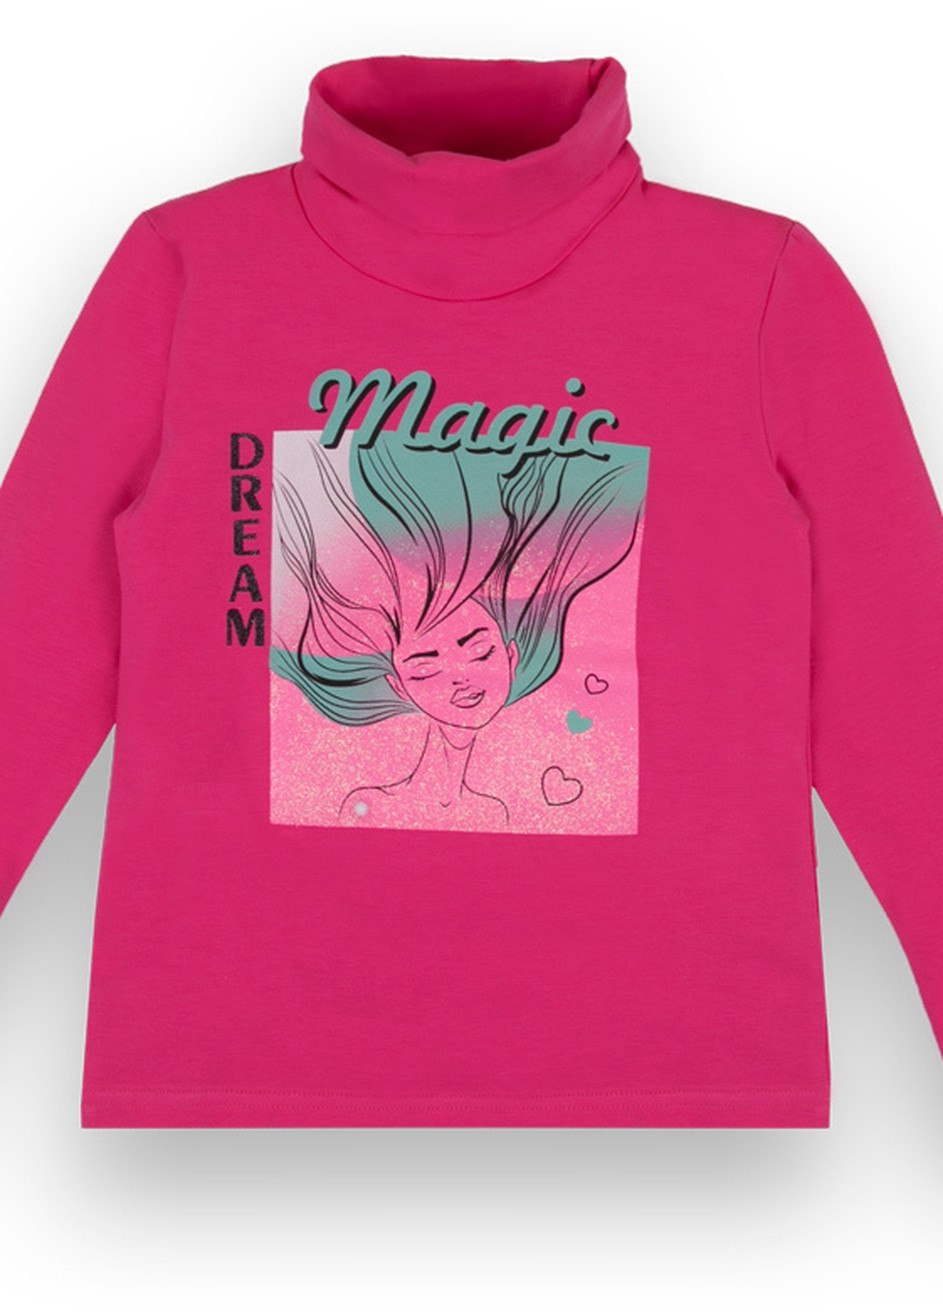 Малиновый зимний детский свитер для девочки *magic* Габби